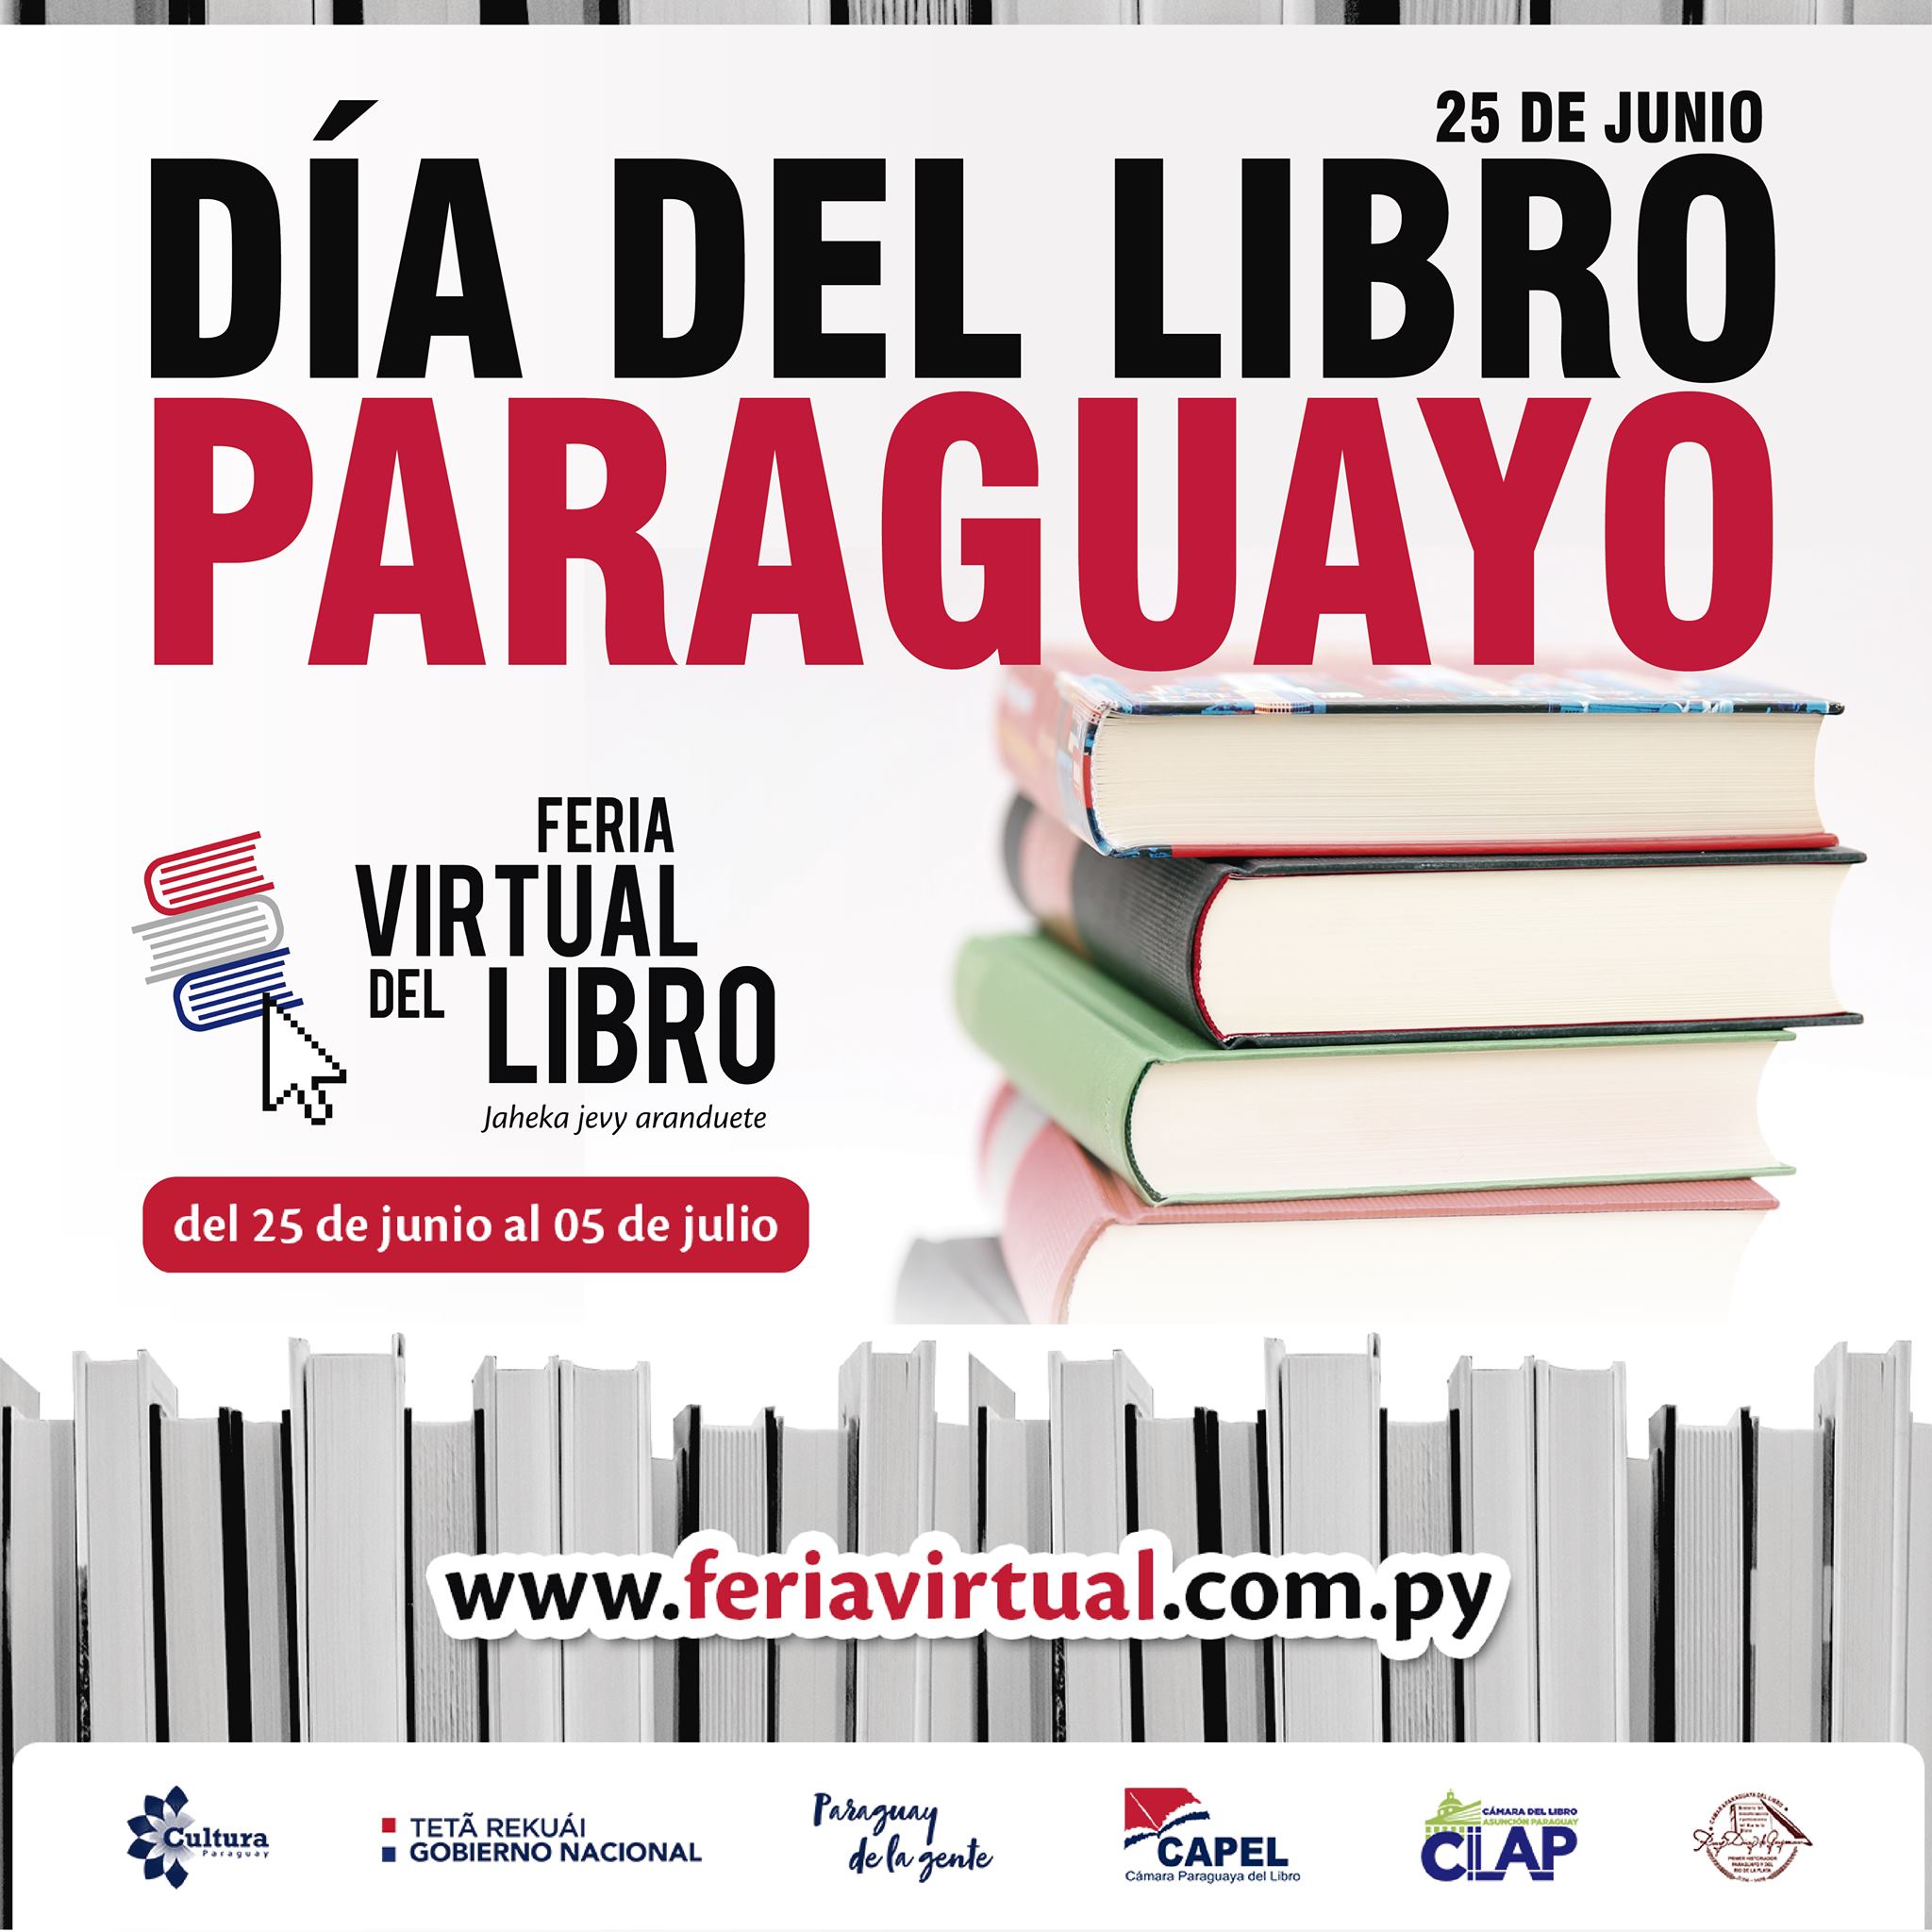 Día del Libro Paraguayo. Fuente: Feria Virtual del Libro